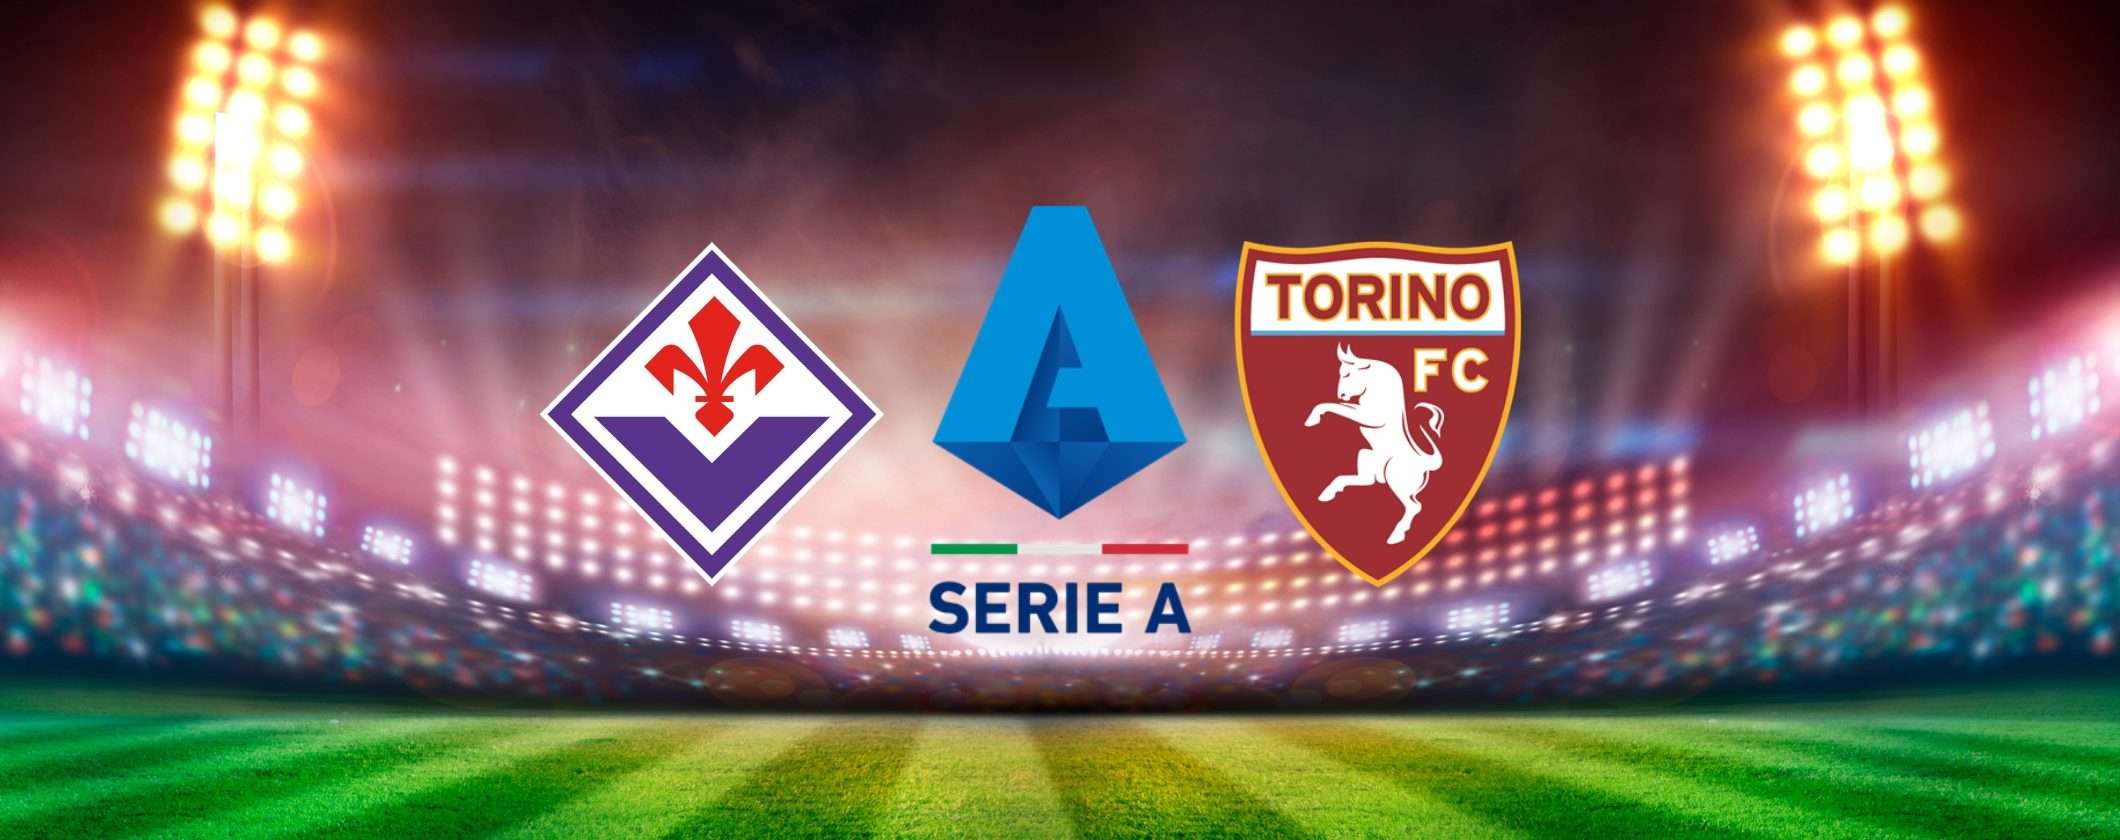 Come vedere Fiorentina-Torino in streaming dall'estero senza restrizioni